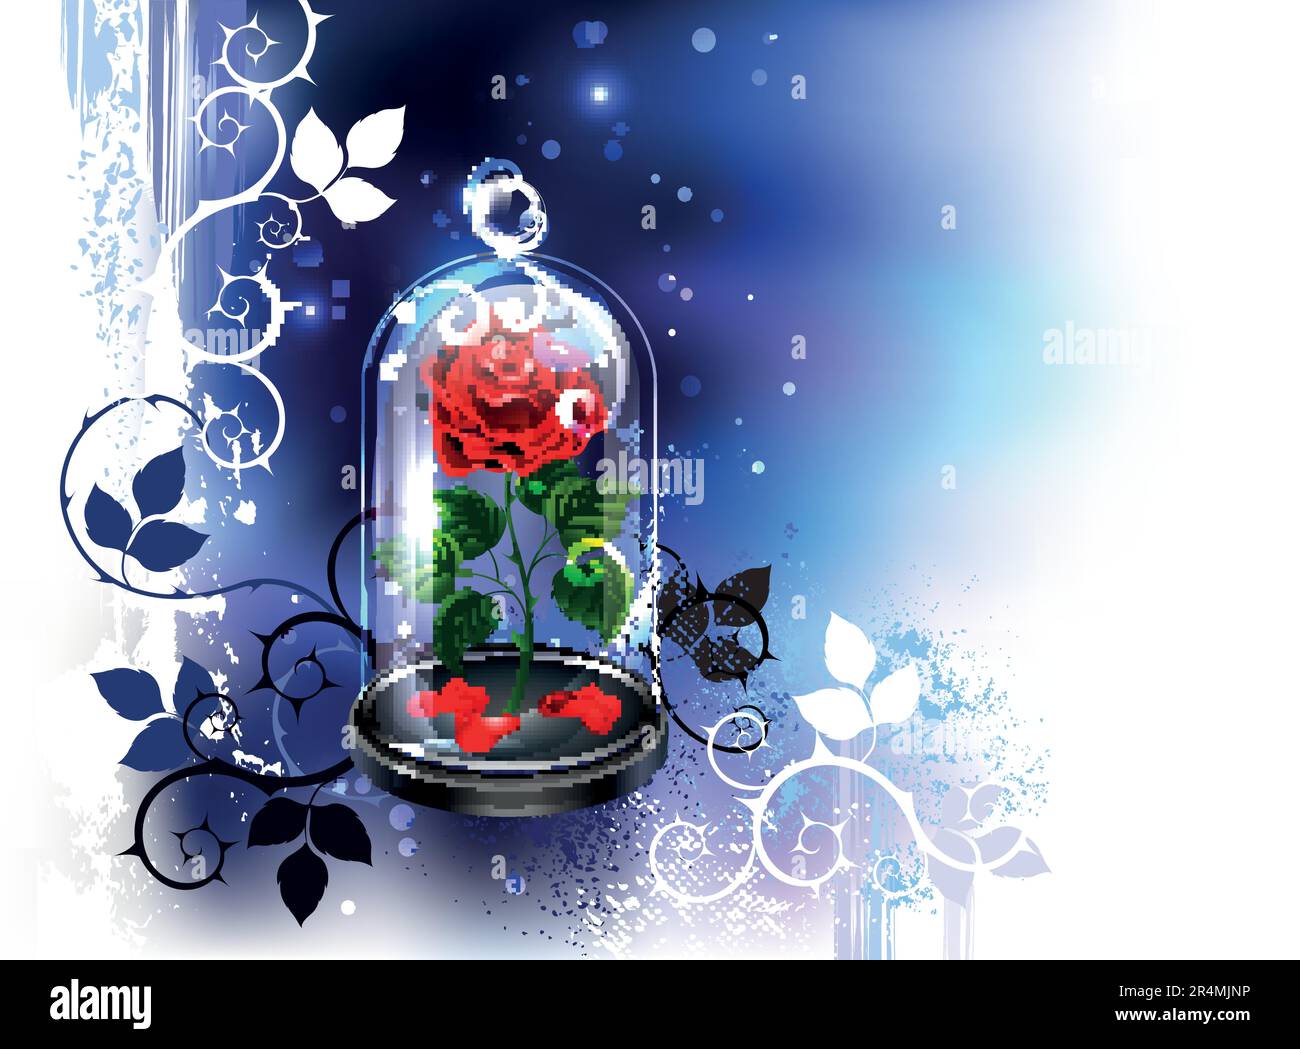 Transparente Glaskuppel mit künstlerisch gestrichener roter Rose auf nachtaktivem blauem Hintergrund mit weißen Farbflecken. Rote Rose Schönheit. Stock Vektor